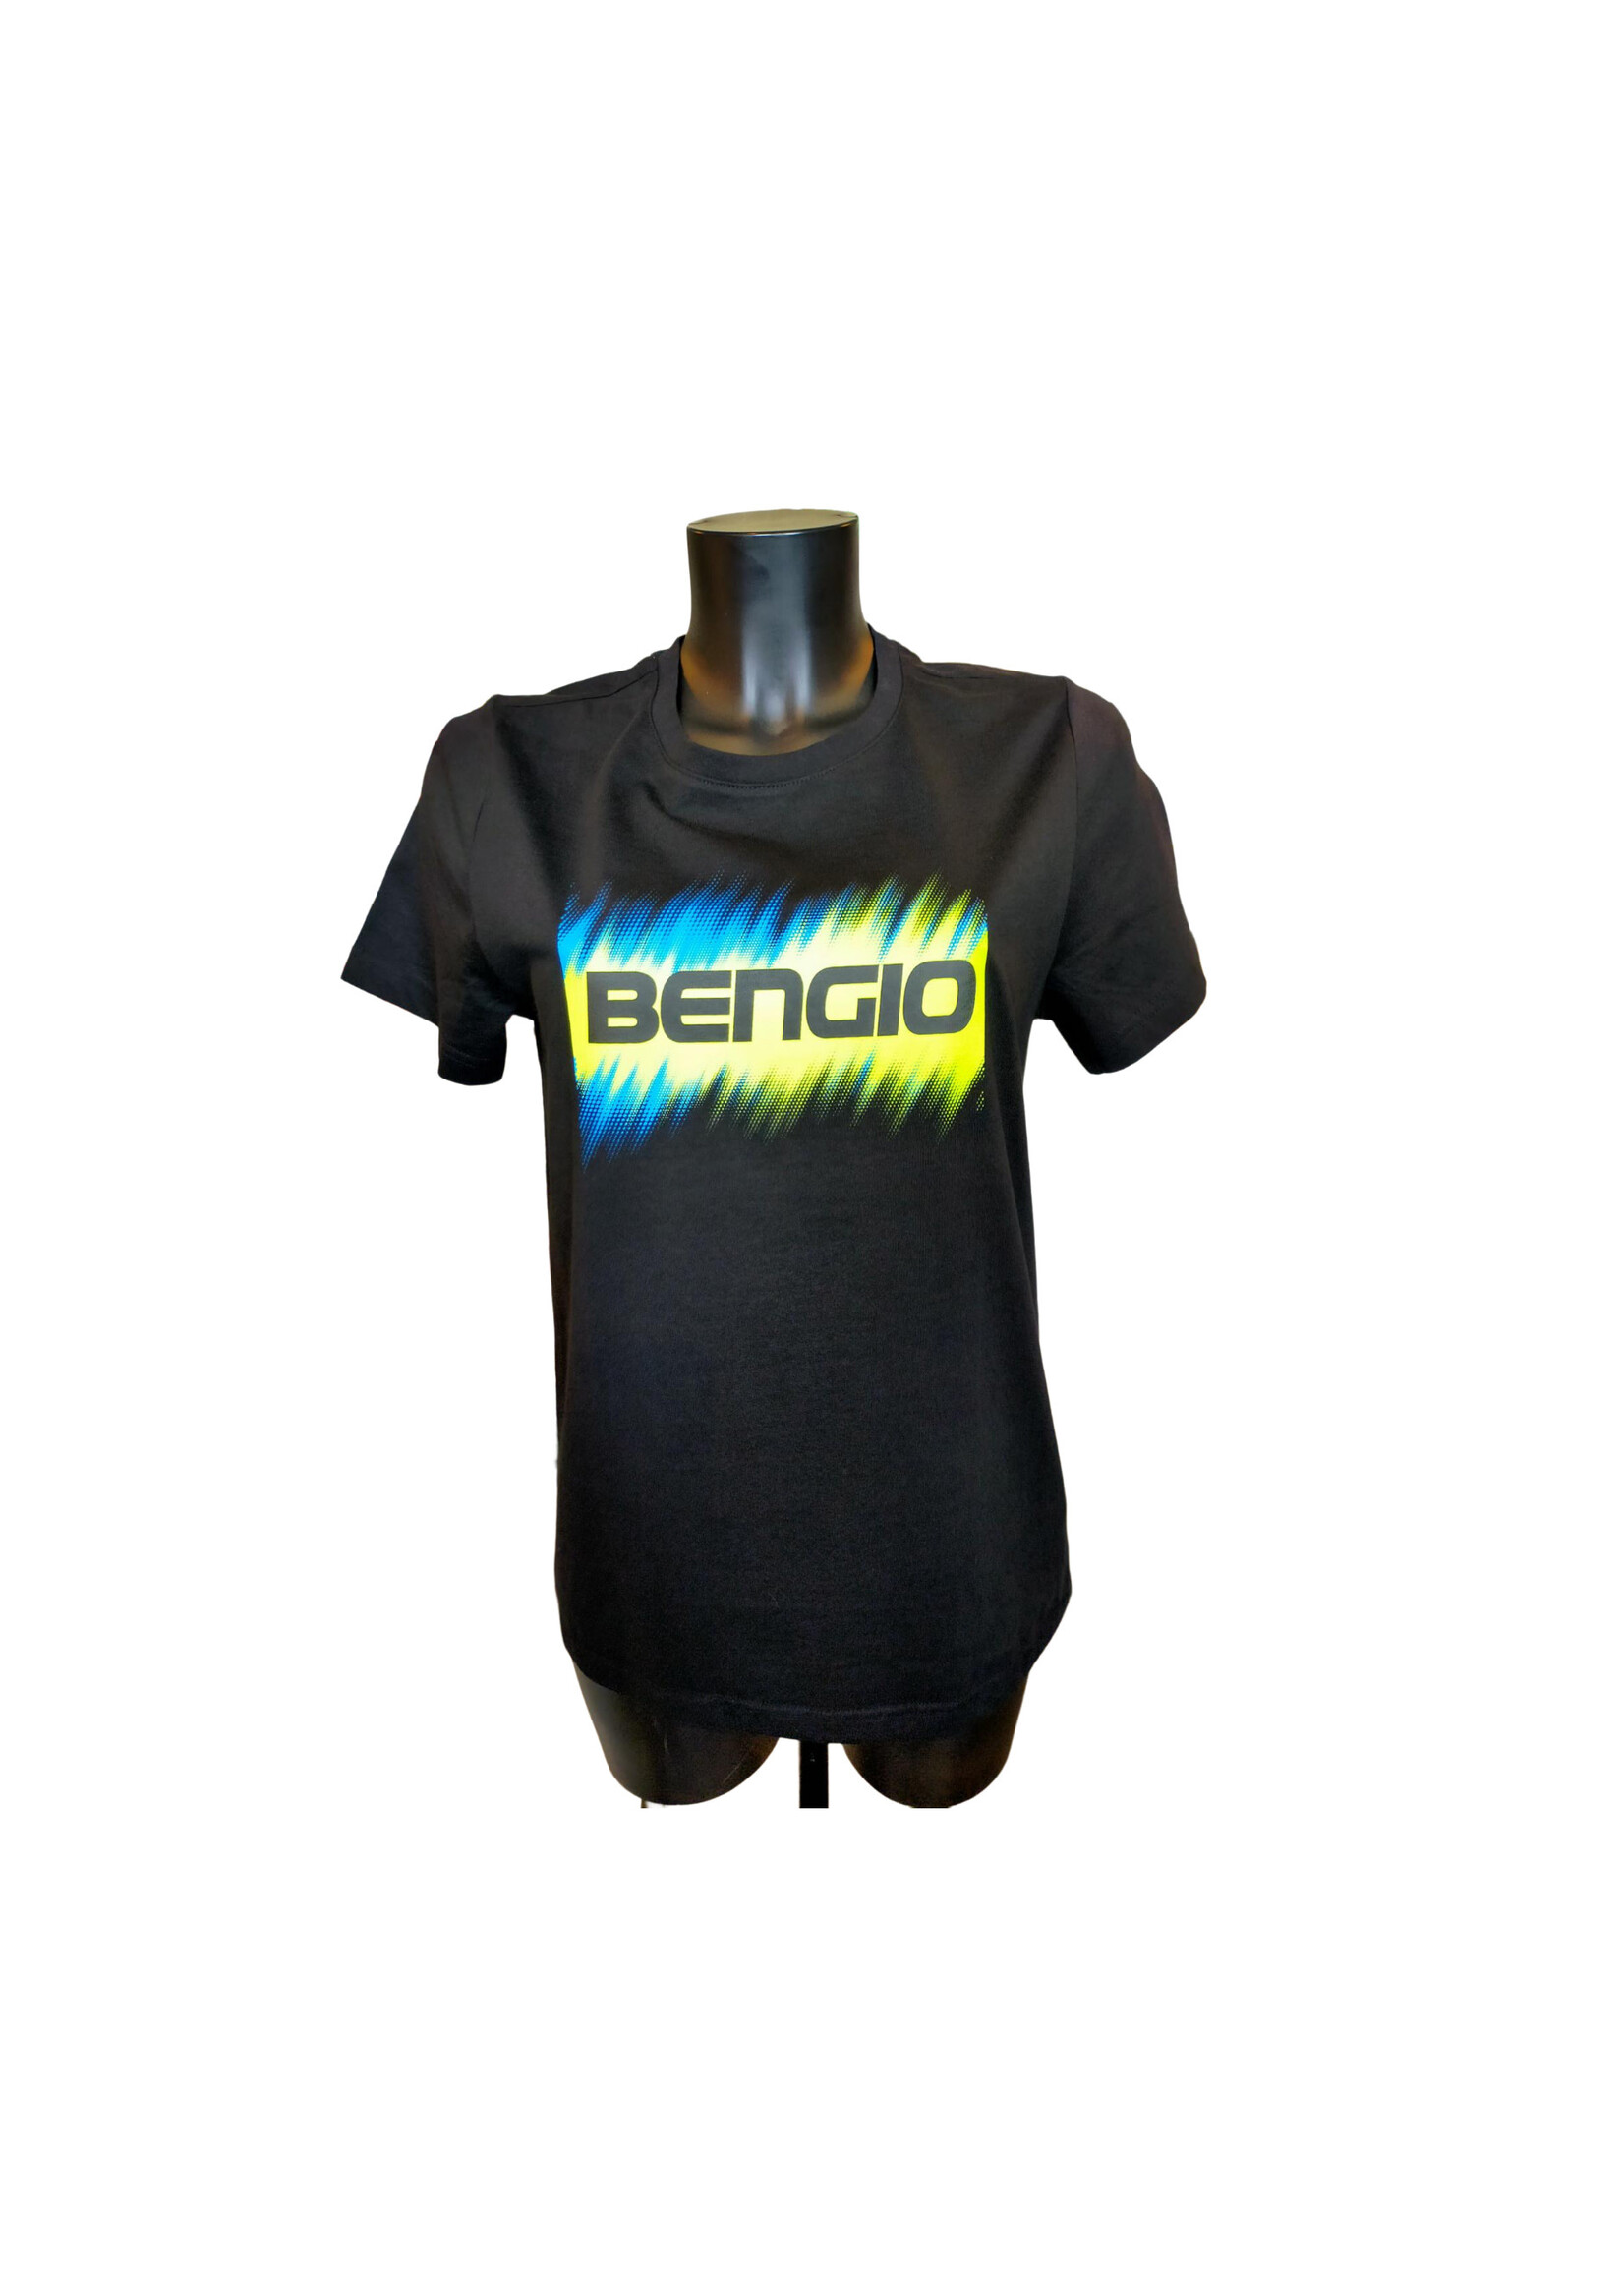 Bengio Bengio T-Shirt Black/Yellow/Blue